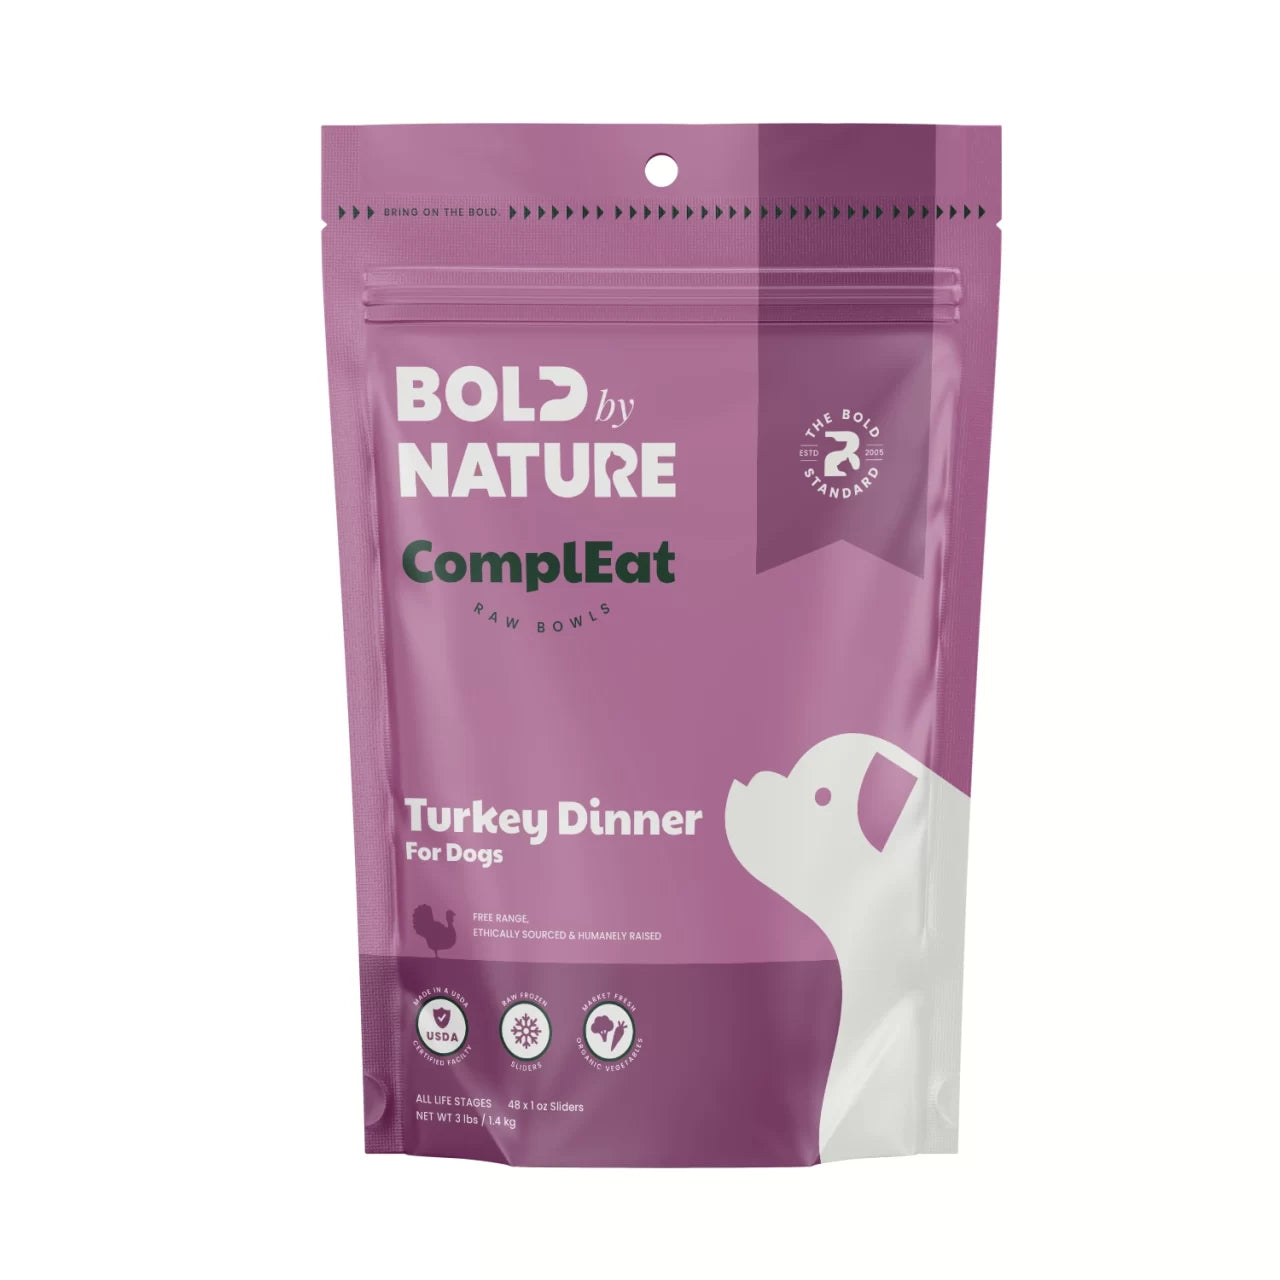 Turkey Dinner for Dogs